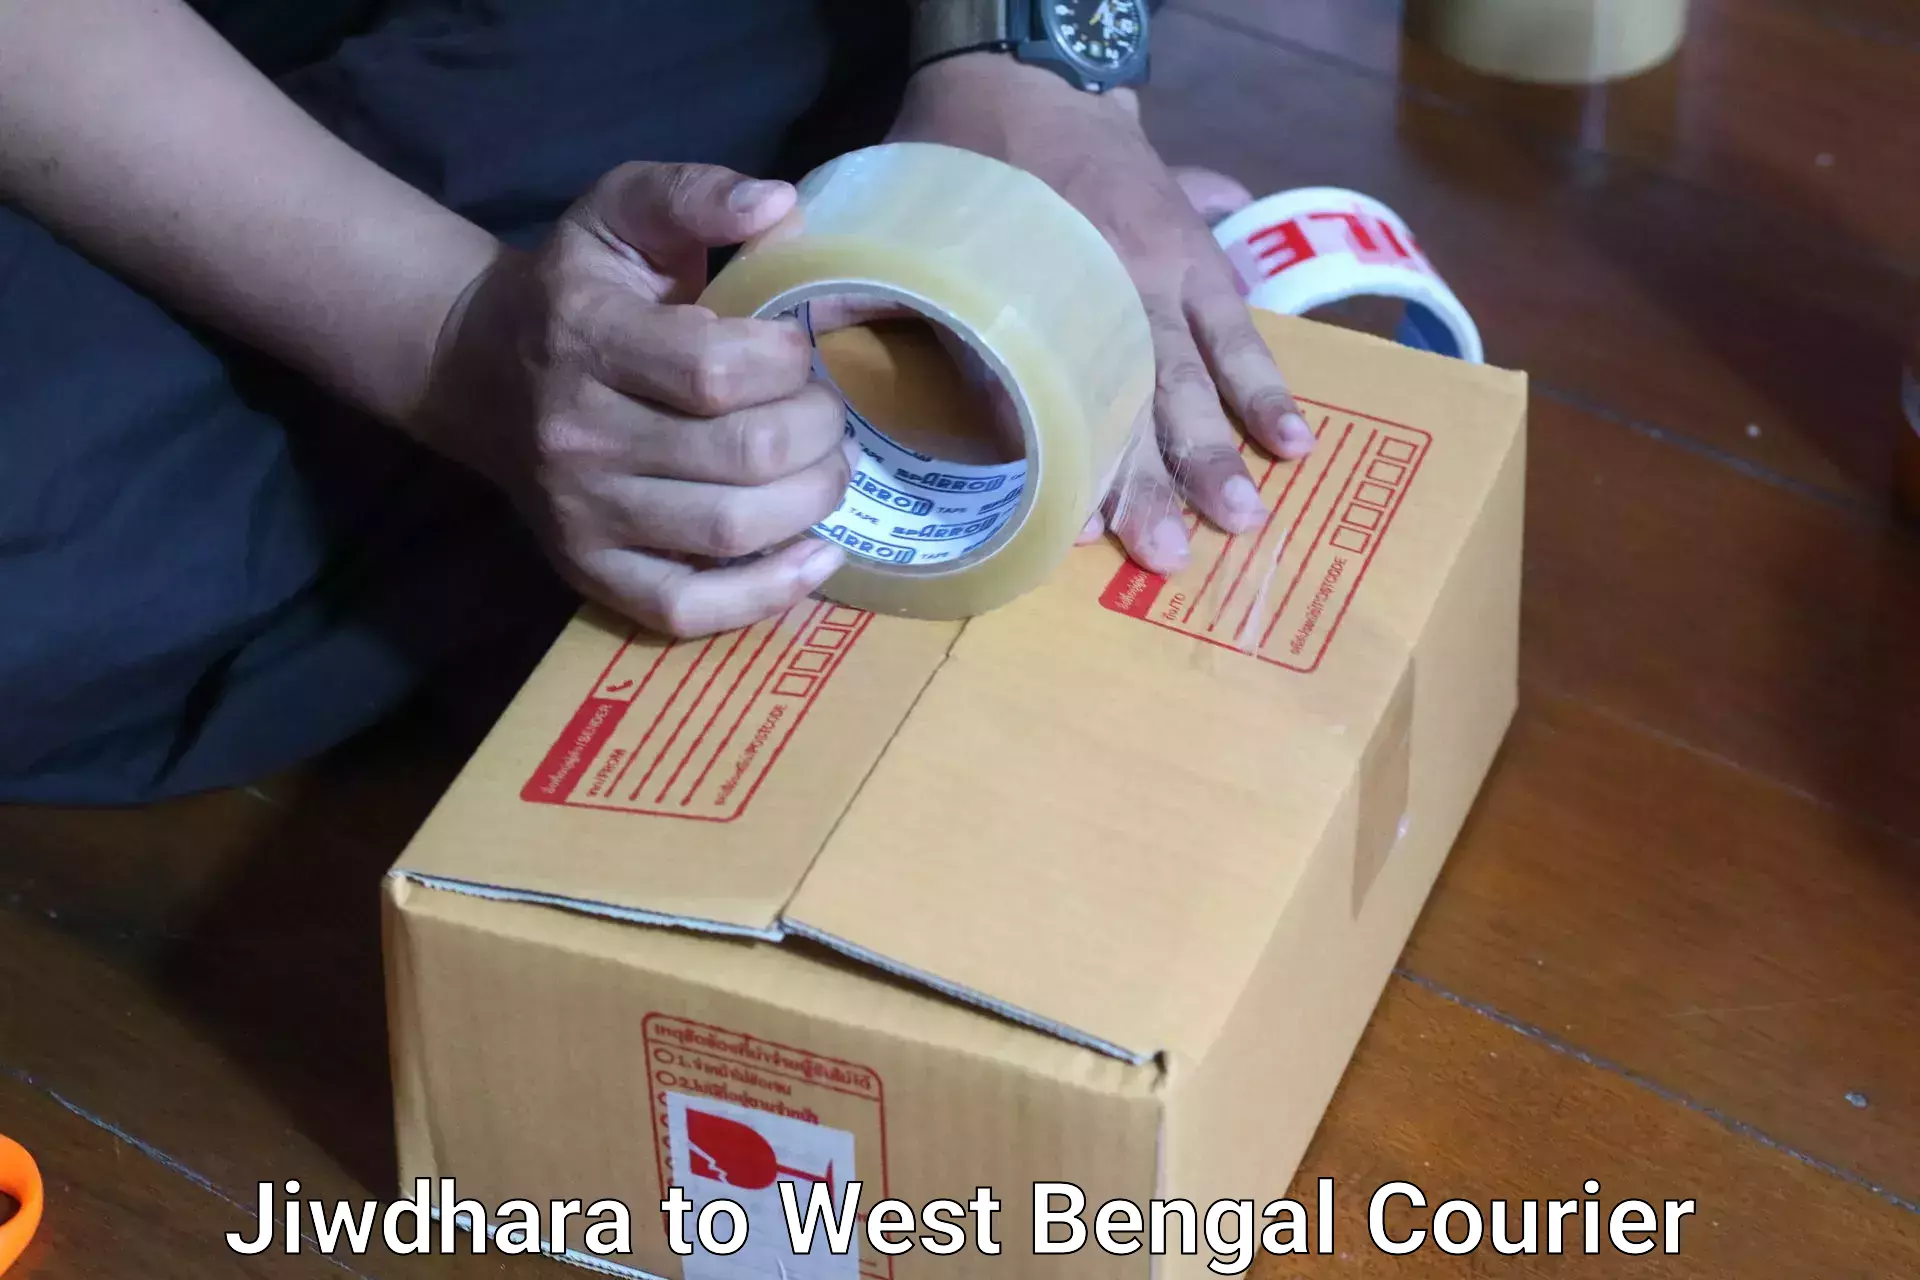 Baggage shipping service Jiwdhara to Farakka